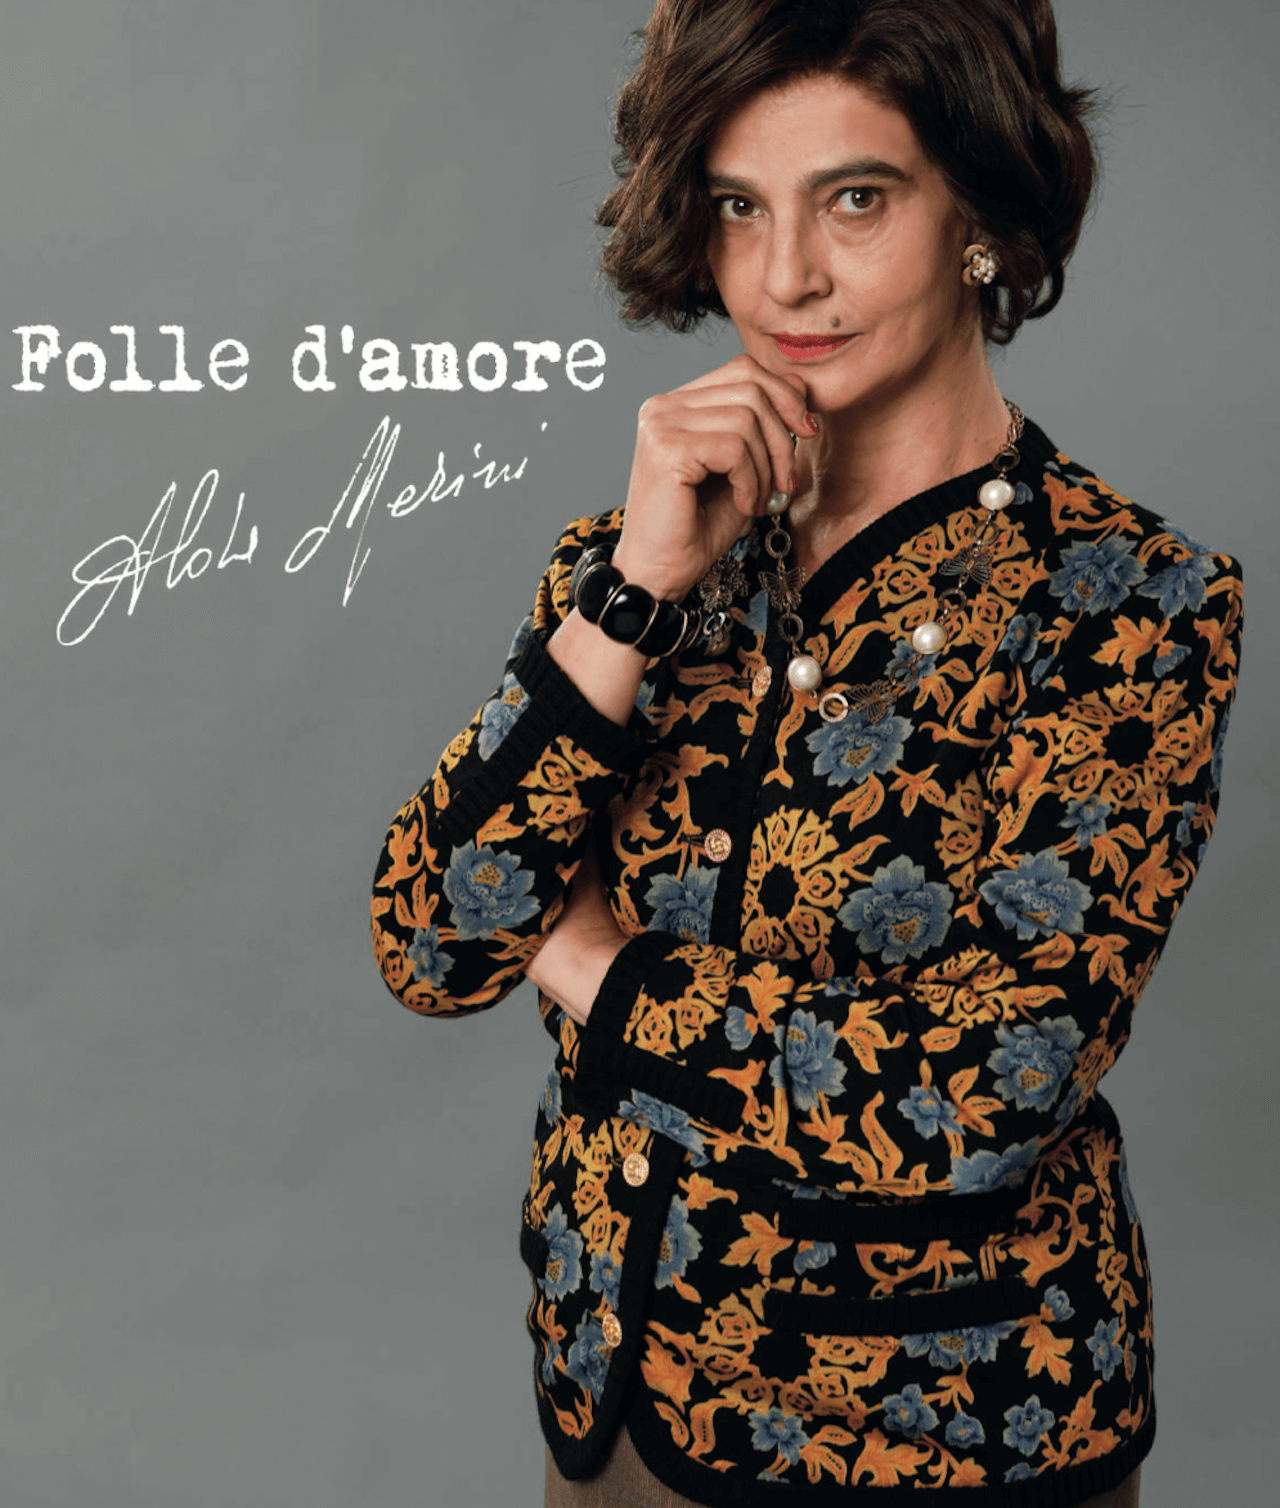 Folle d'Amore, arriva il film Rai su Alda Merini con Laura Morante e Federico Cesari. Il trailer - Folle dAmore - Gay.it